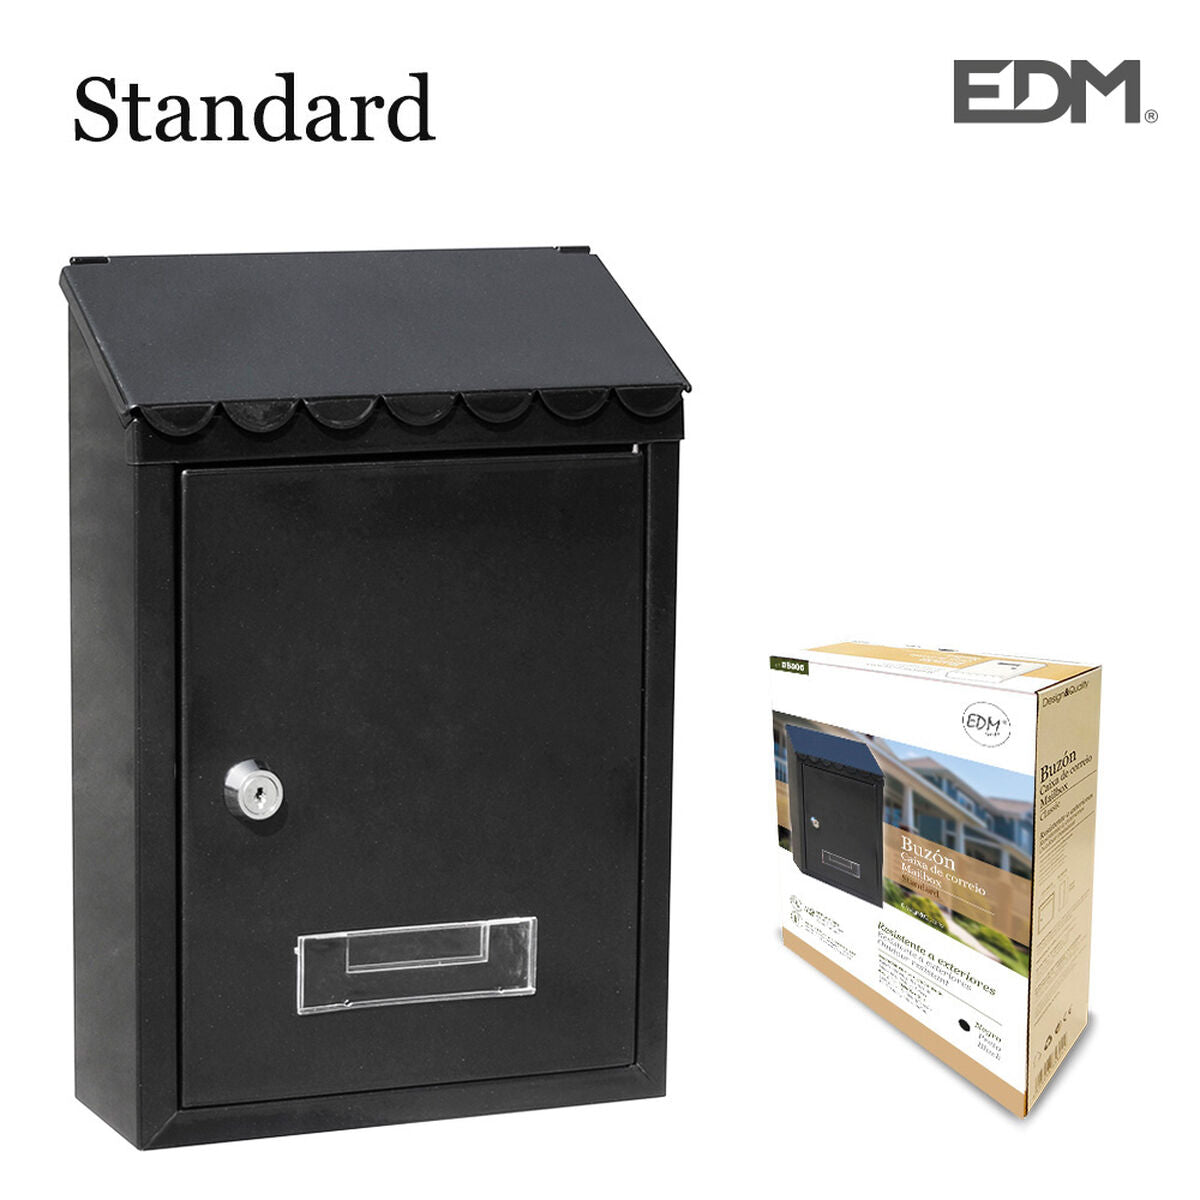 Letterbox EDM Standard 21 x 6 x 30 cm Black Steel